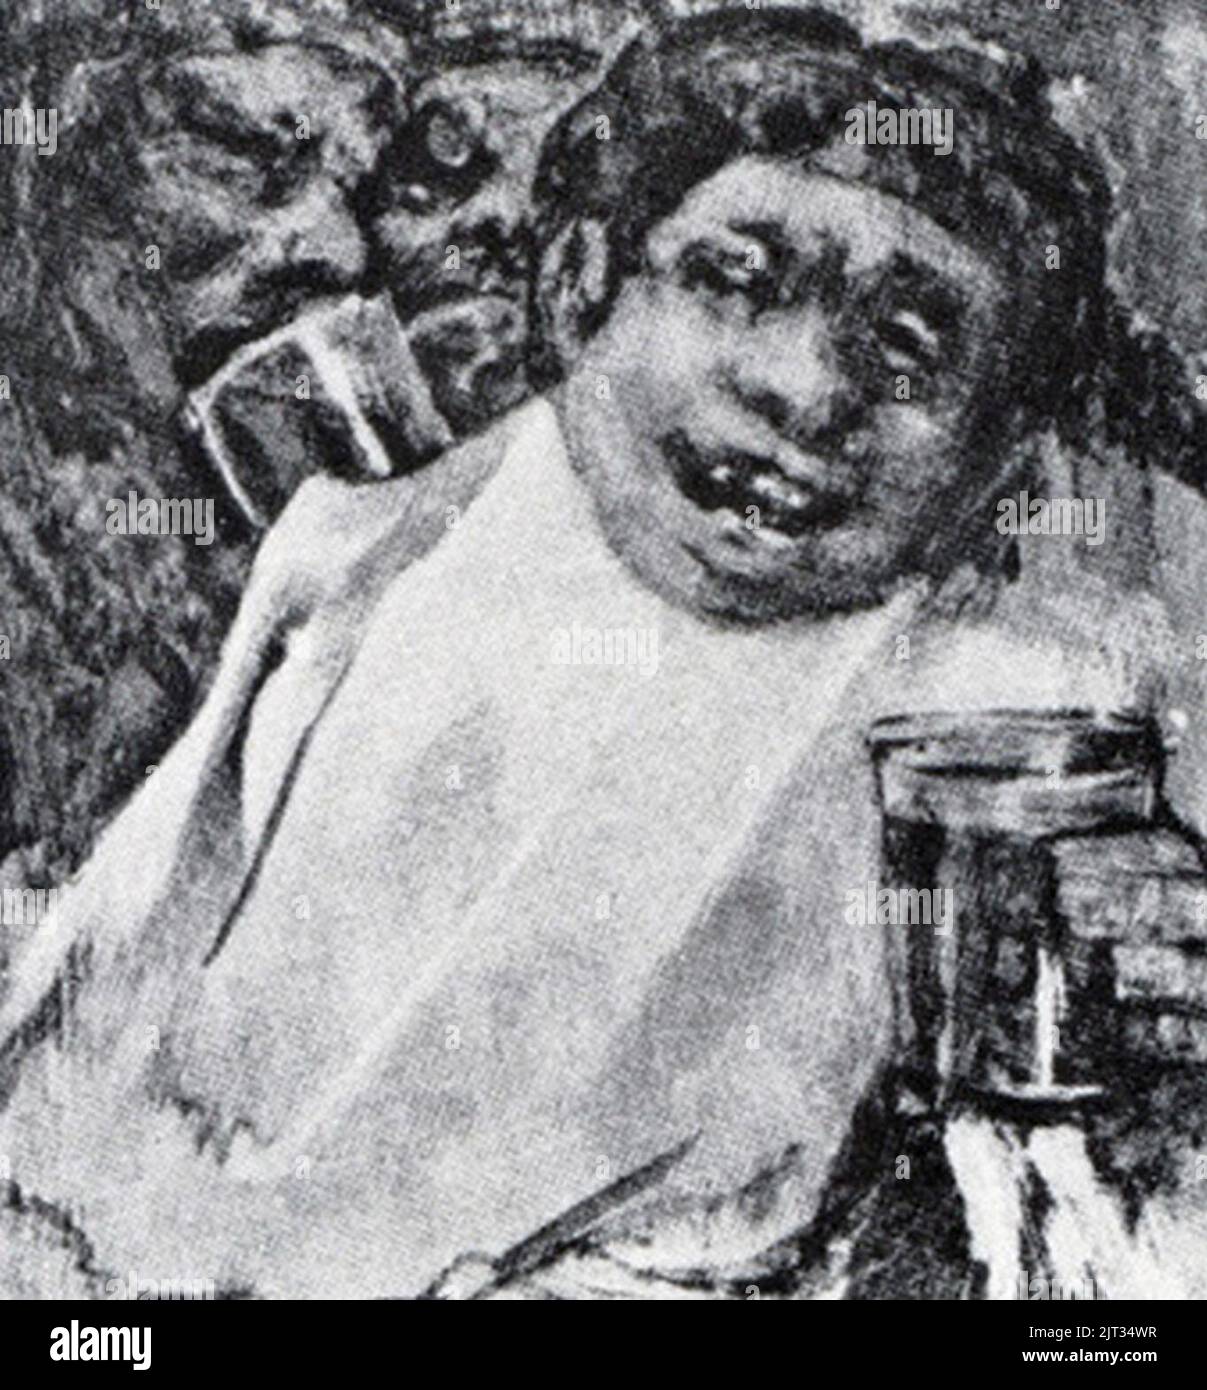 Tres hombres bebiendo, Francisco de Goya. Stock Photo